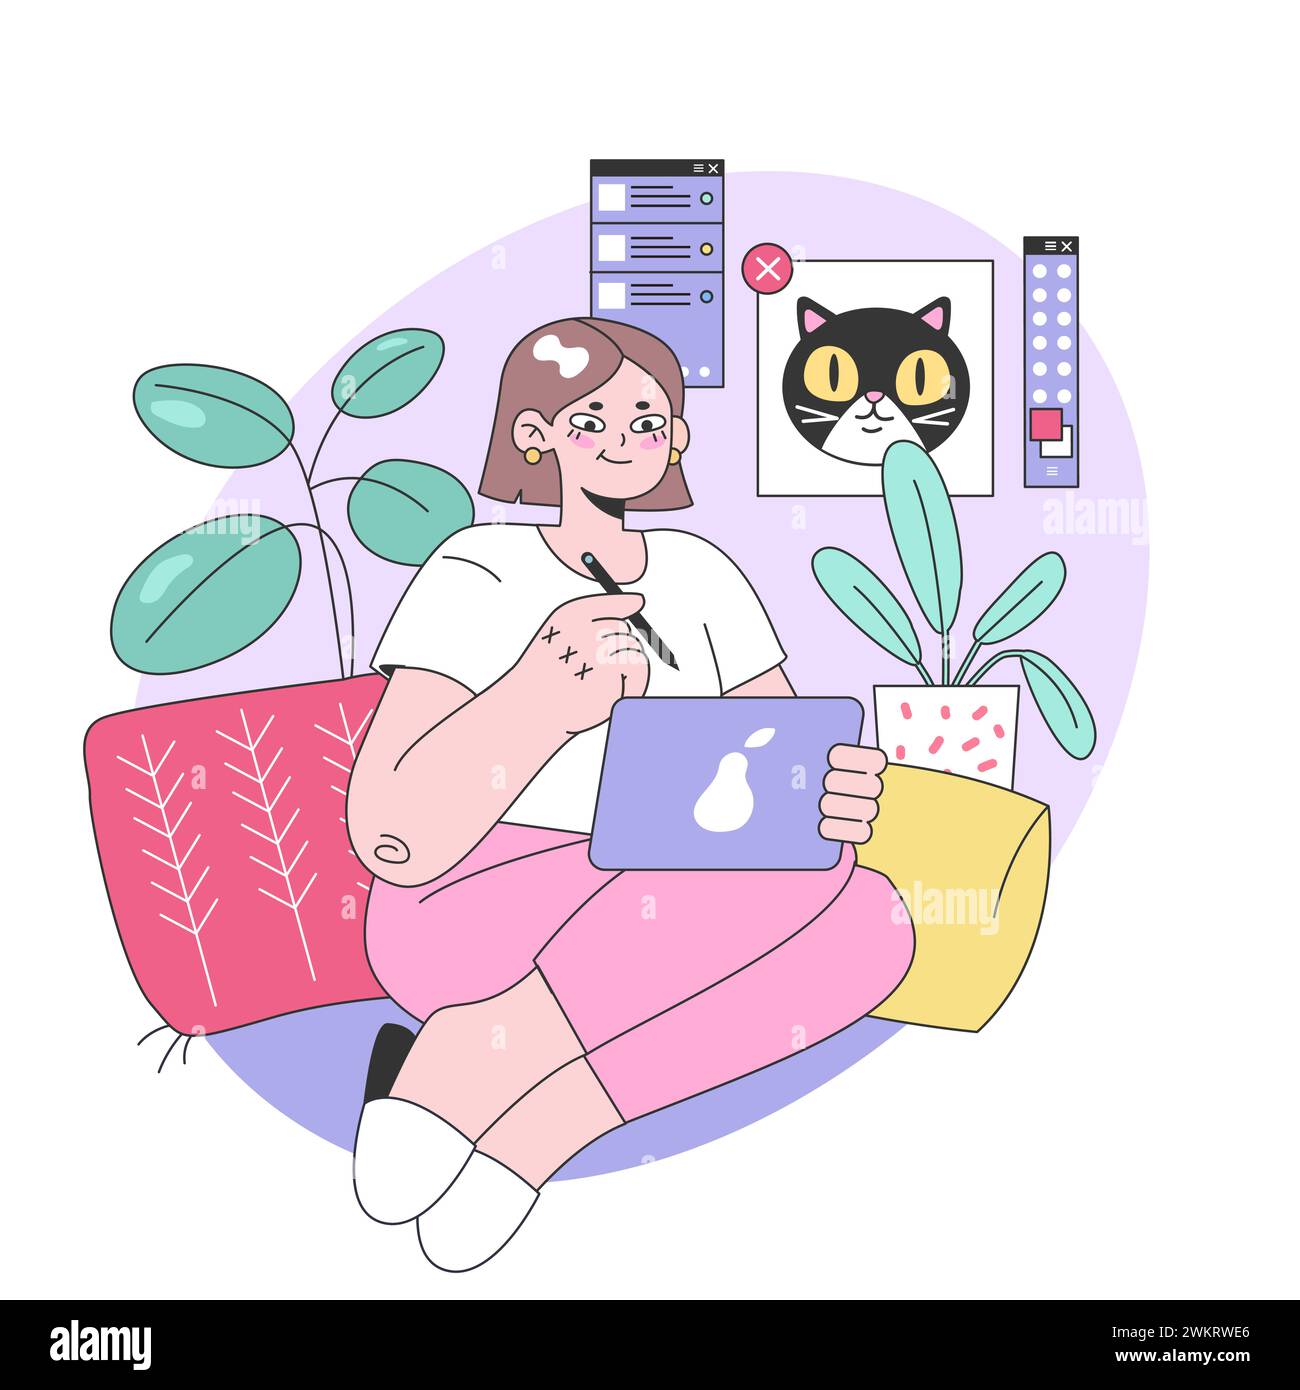 Konzept für digitale Kunstbegeisterte. Eine kreative Frau, die auf ihrem Tablet skizziert, umgeben von Designwerkzeugen und einem skurrilen Katzenfenster. An ihrem Passionsprojekt in einer lebhaften Ecke beteiligt. Vektorabbildung Stock Vektor